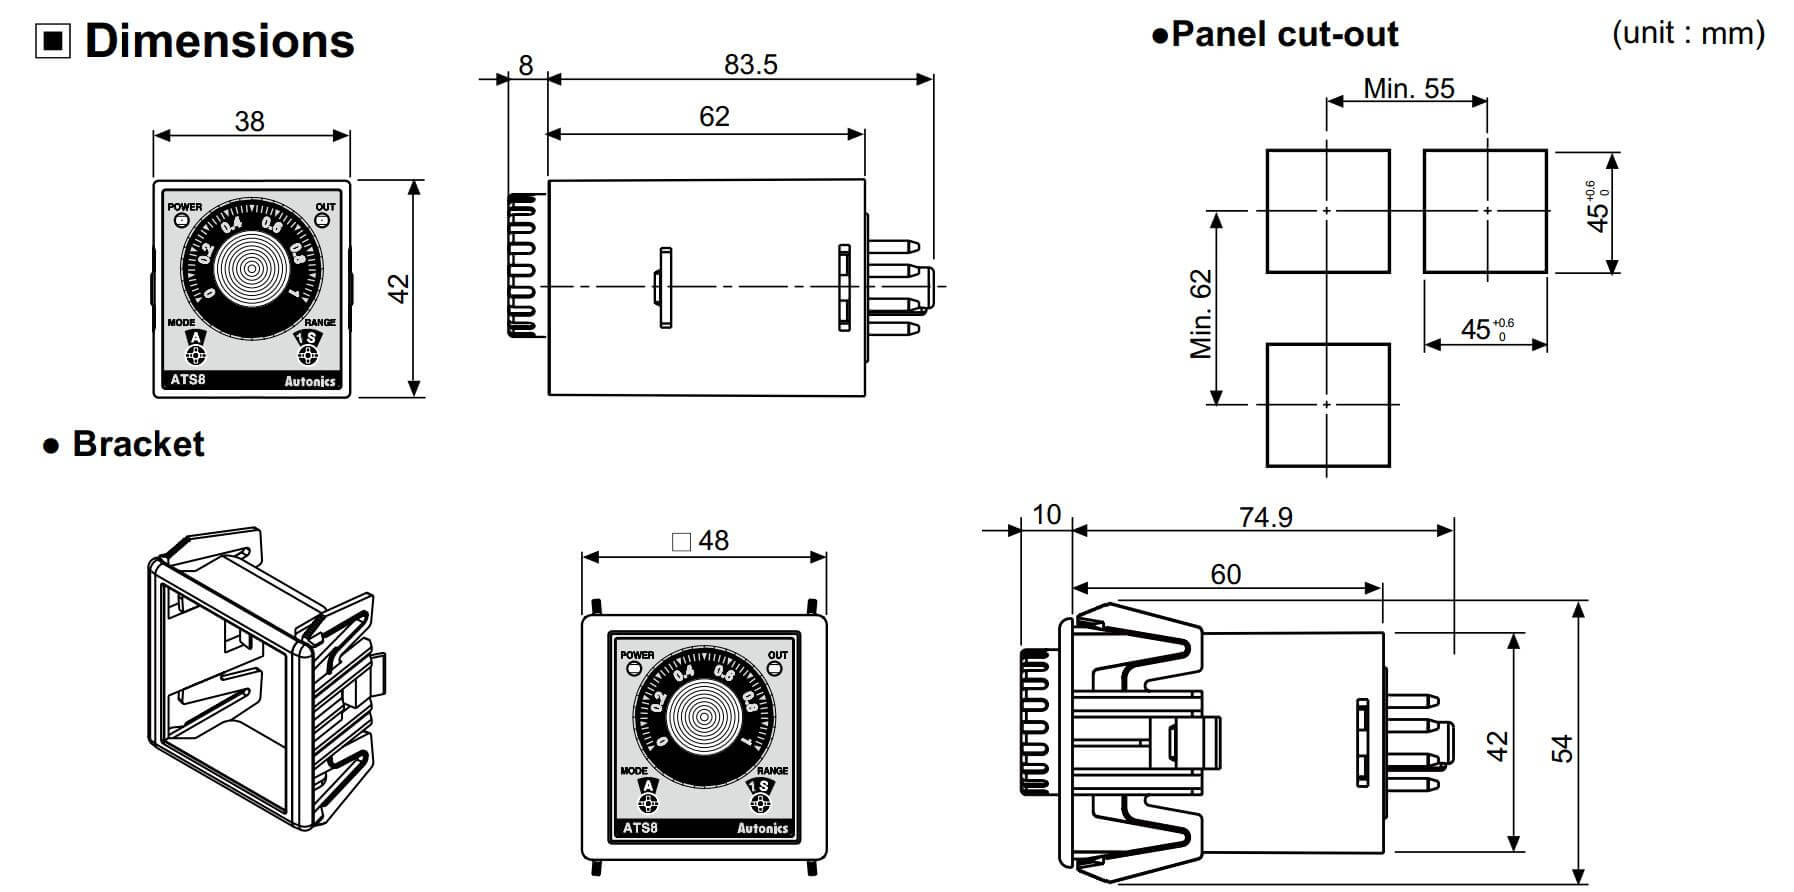 Cấu tạo và Kích thước Autonics ATS11-11D: Bộ định thời gian (Timer)